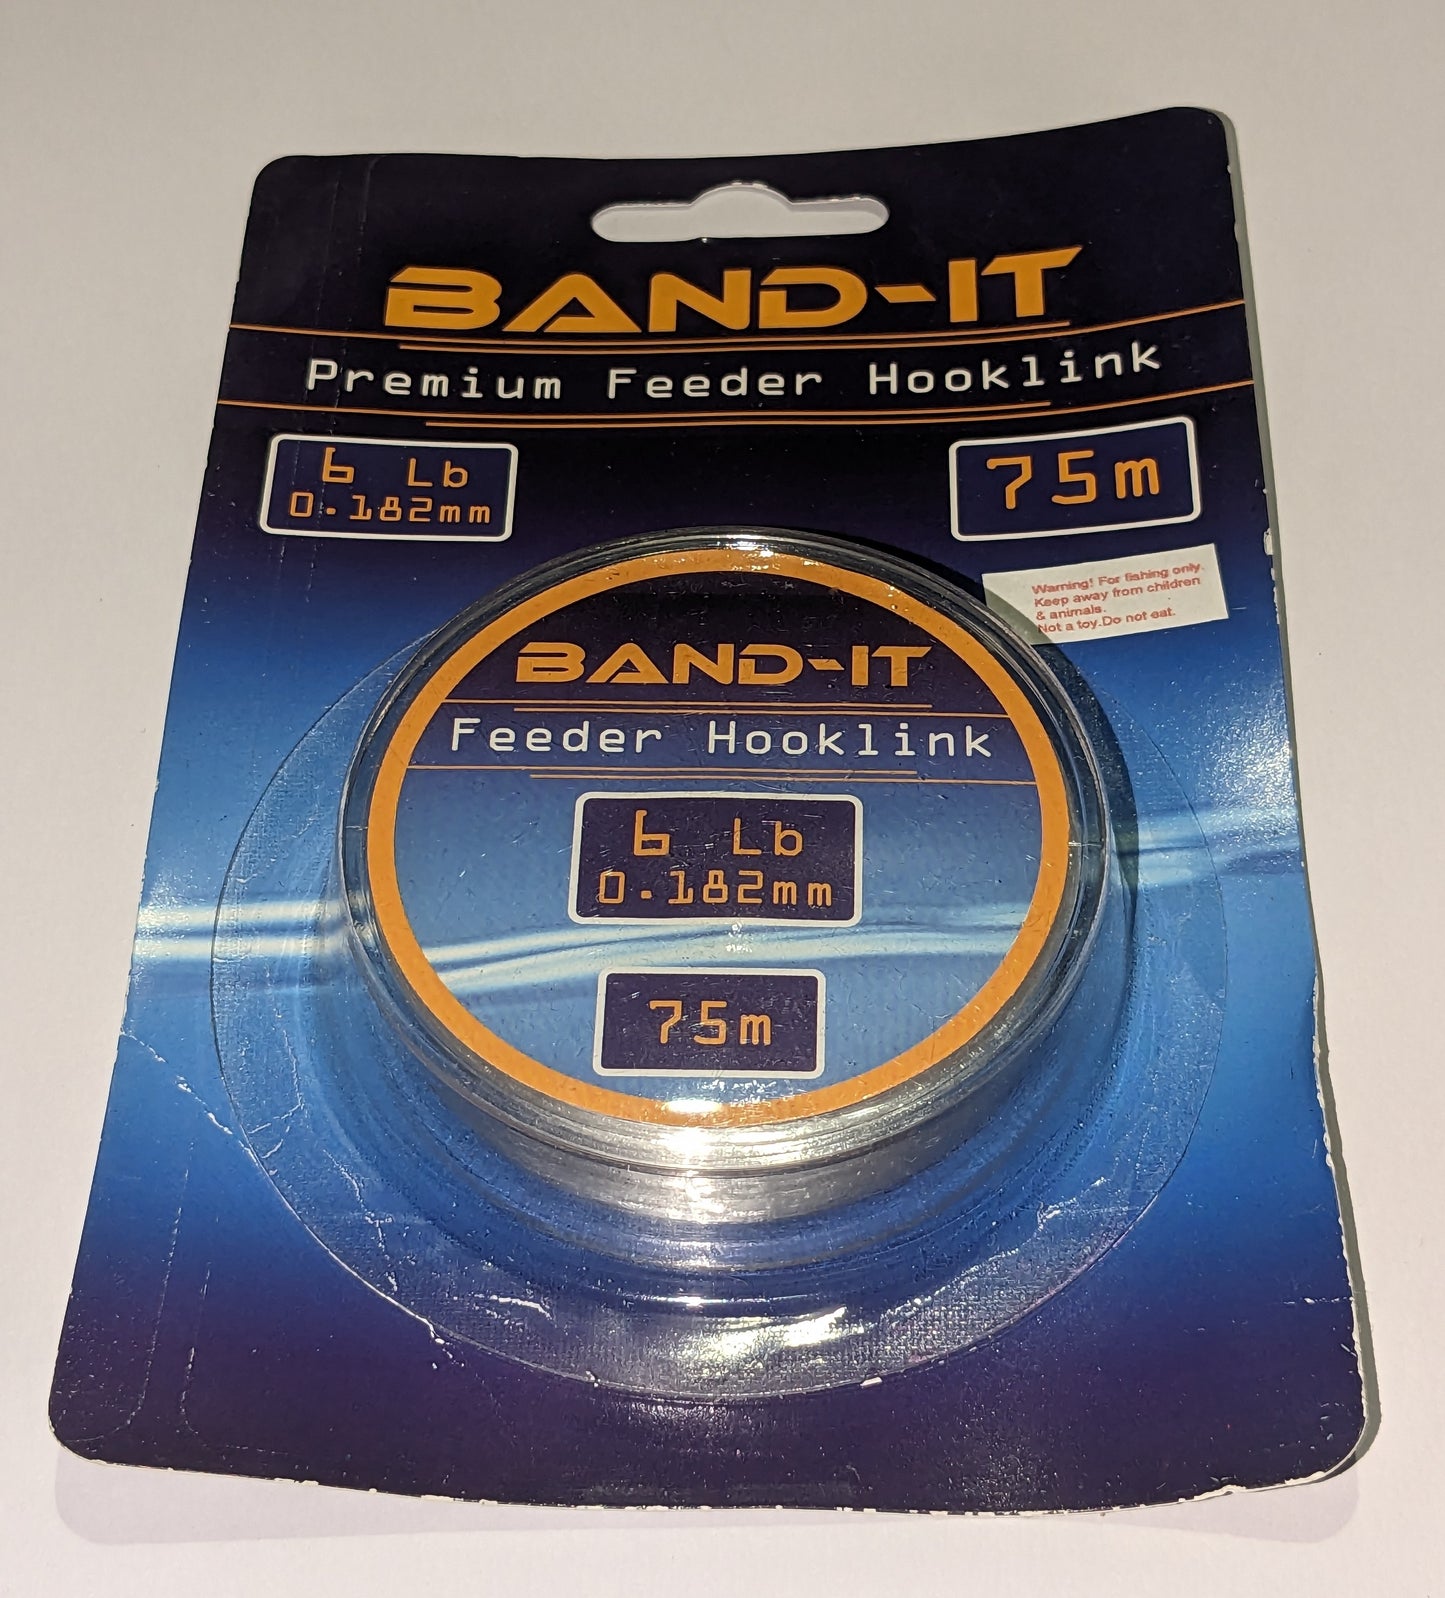 Band-it 6lb Clear Feeder Hooklink Line. - www.nafni.com